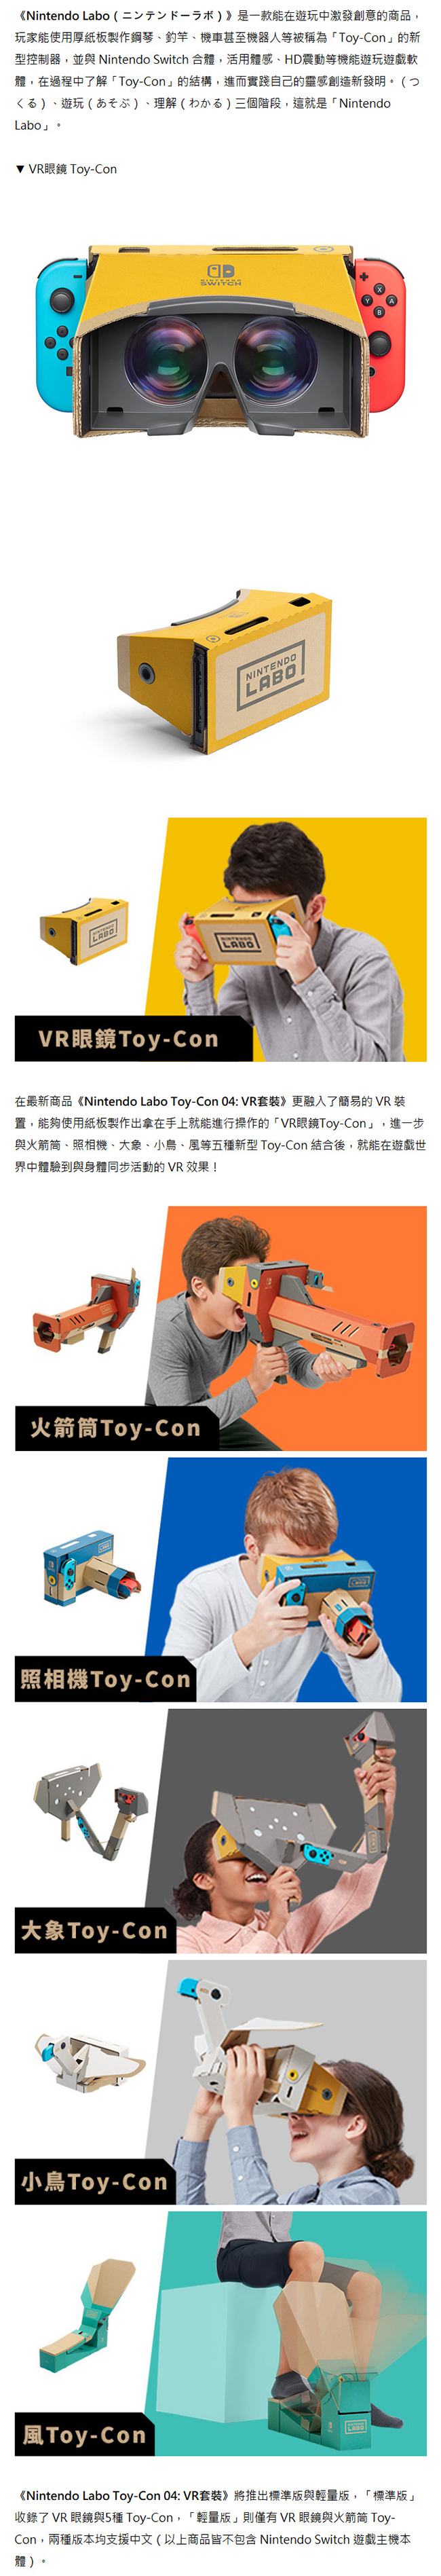 任天堂 Labo Toy-Con 04:VR Kit#2 含小鳥及風Toy-Con